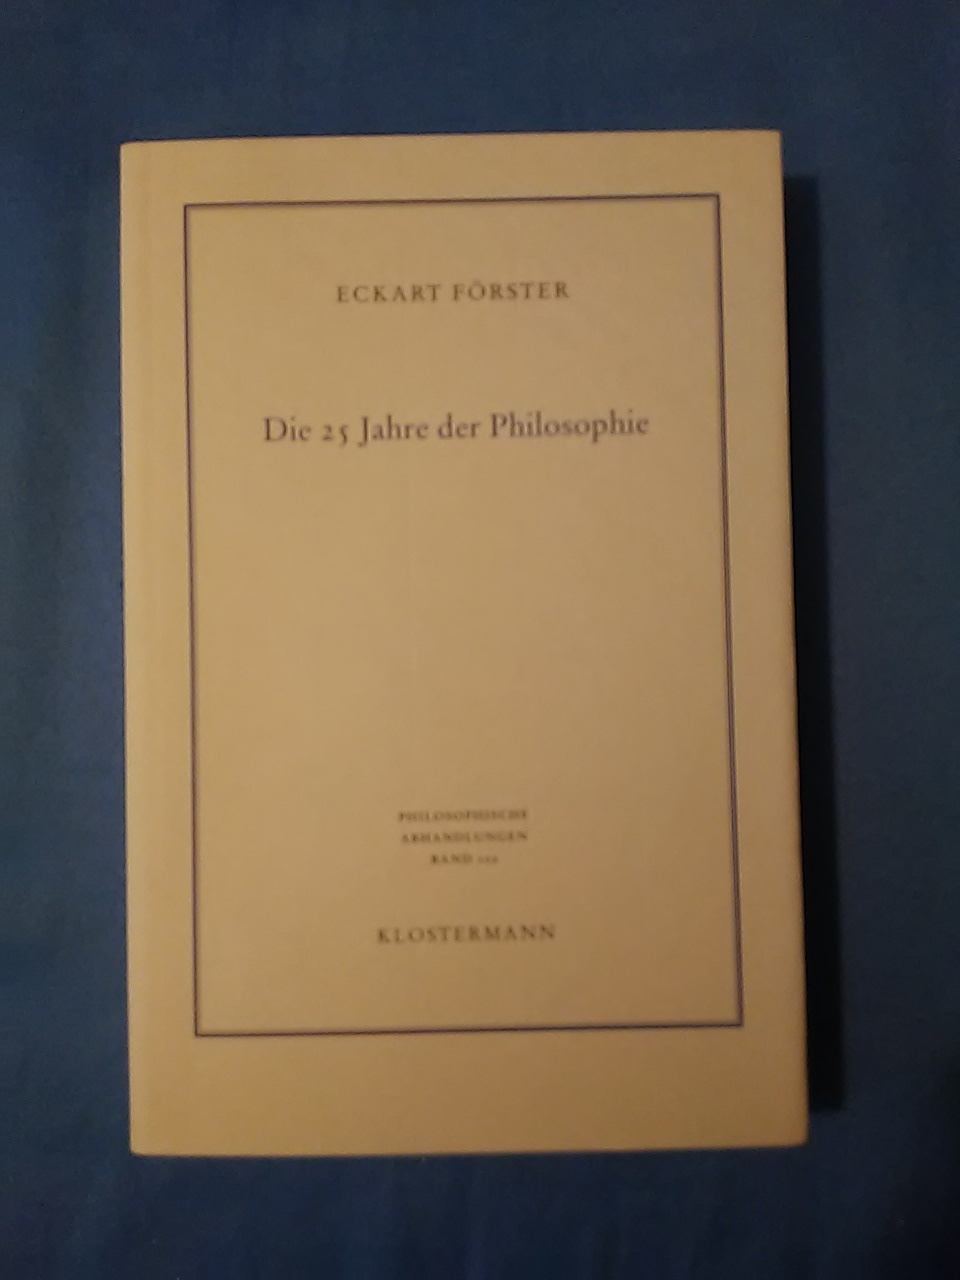 Die 25 Jahre der Philosophie : eine systematische Rekonstruktion. Philosophische Abhandlungen ; Bd. 102. - Förster, Eckart.